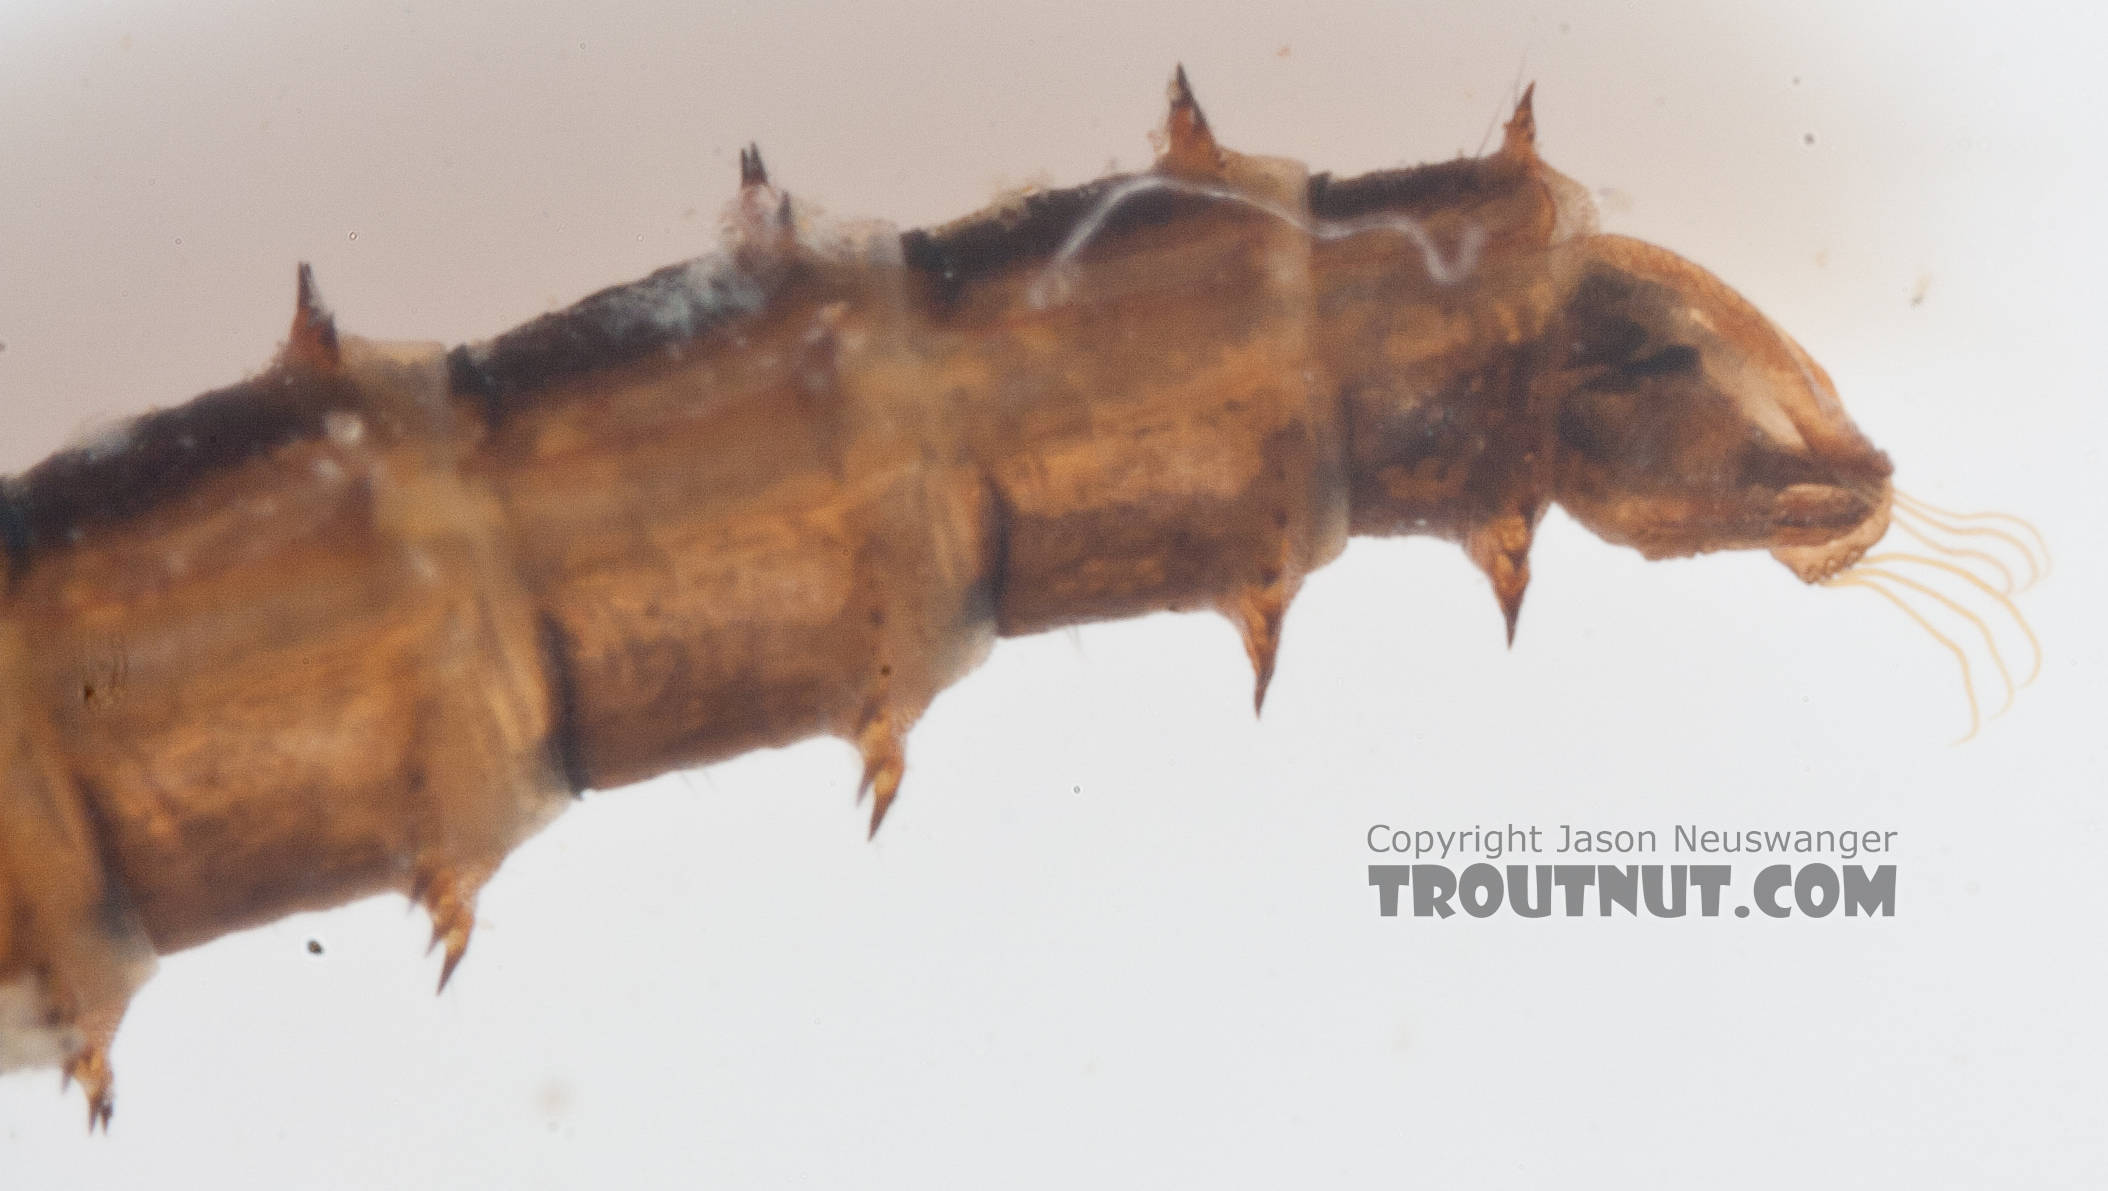 Chironomidae (Midges) Midge Pupa from the Gulkana River in Alaska